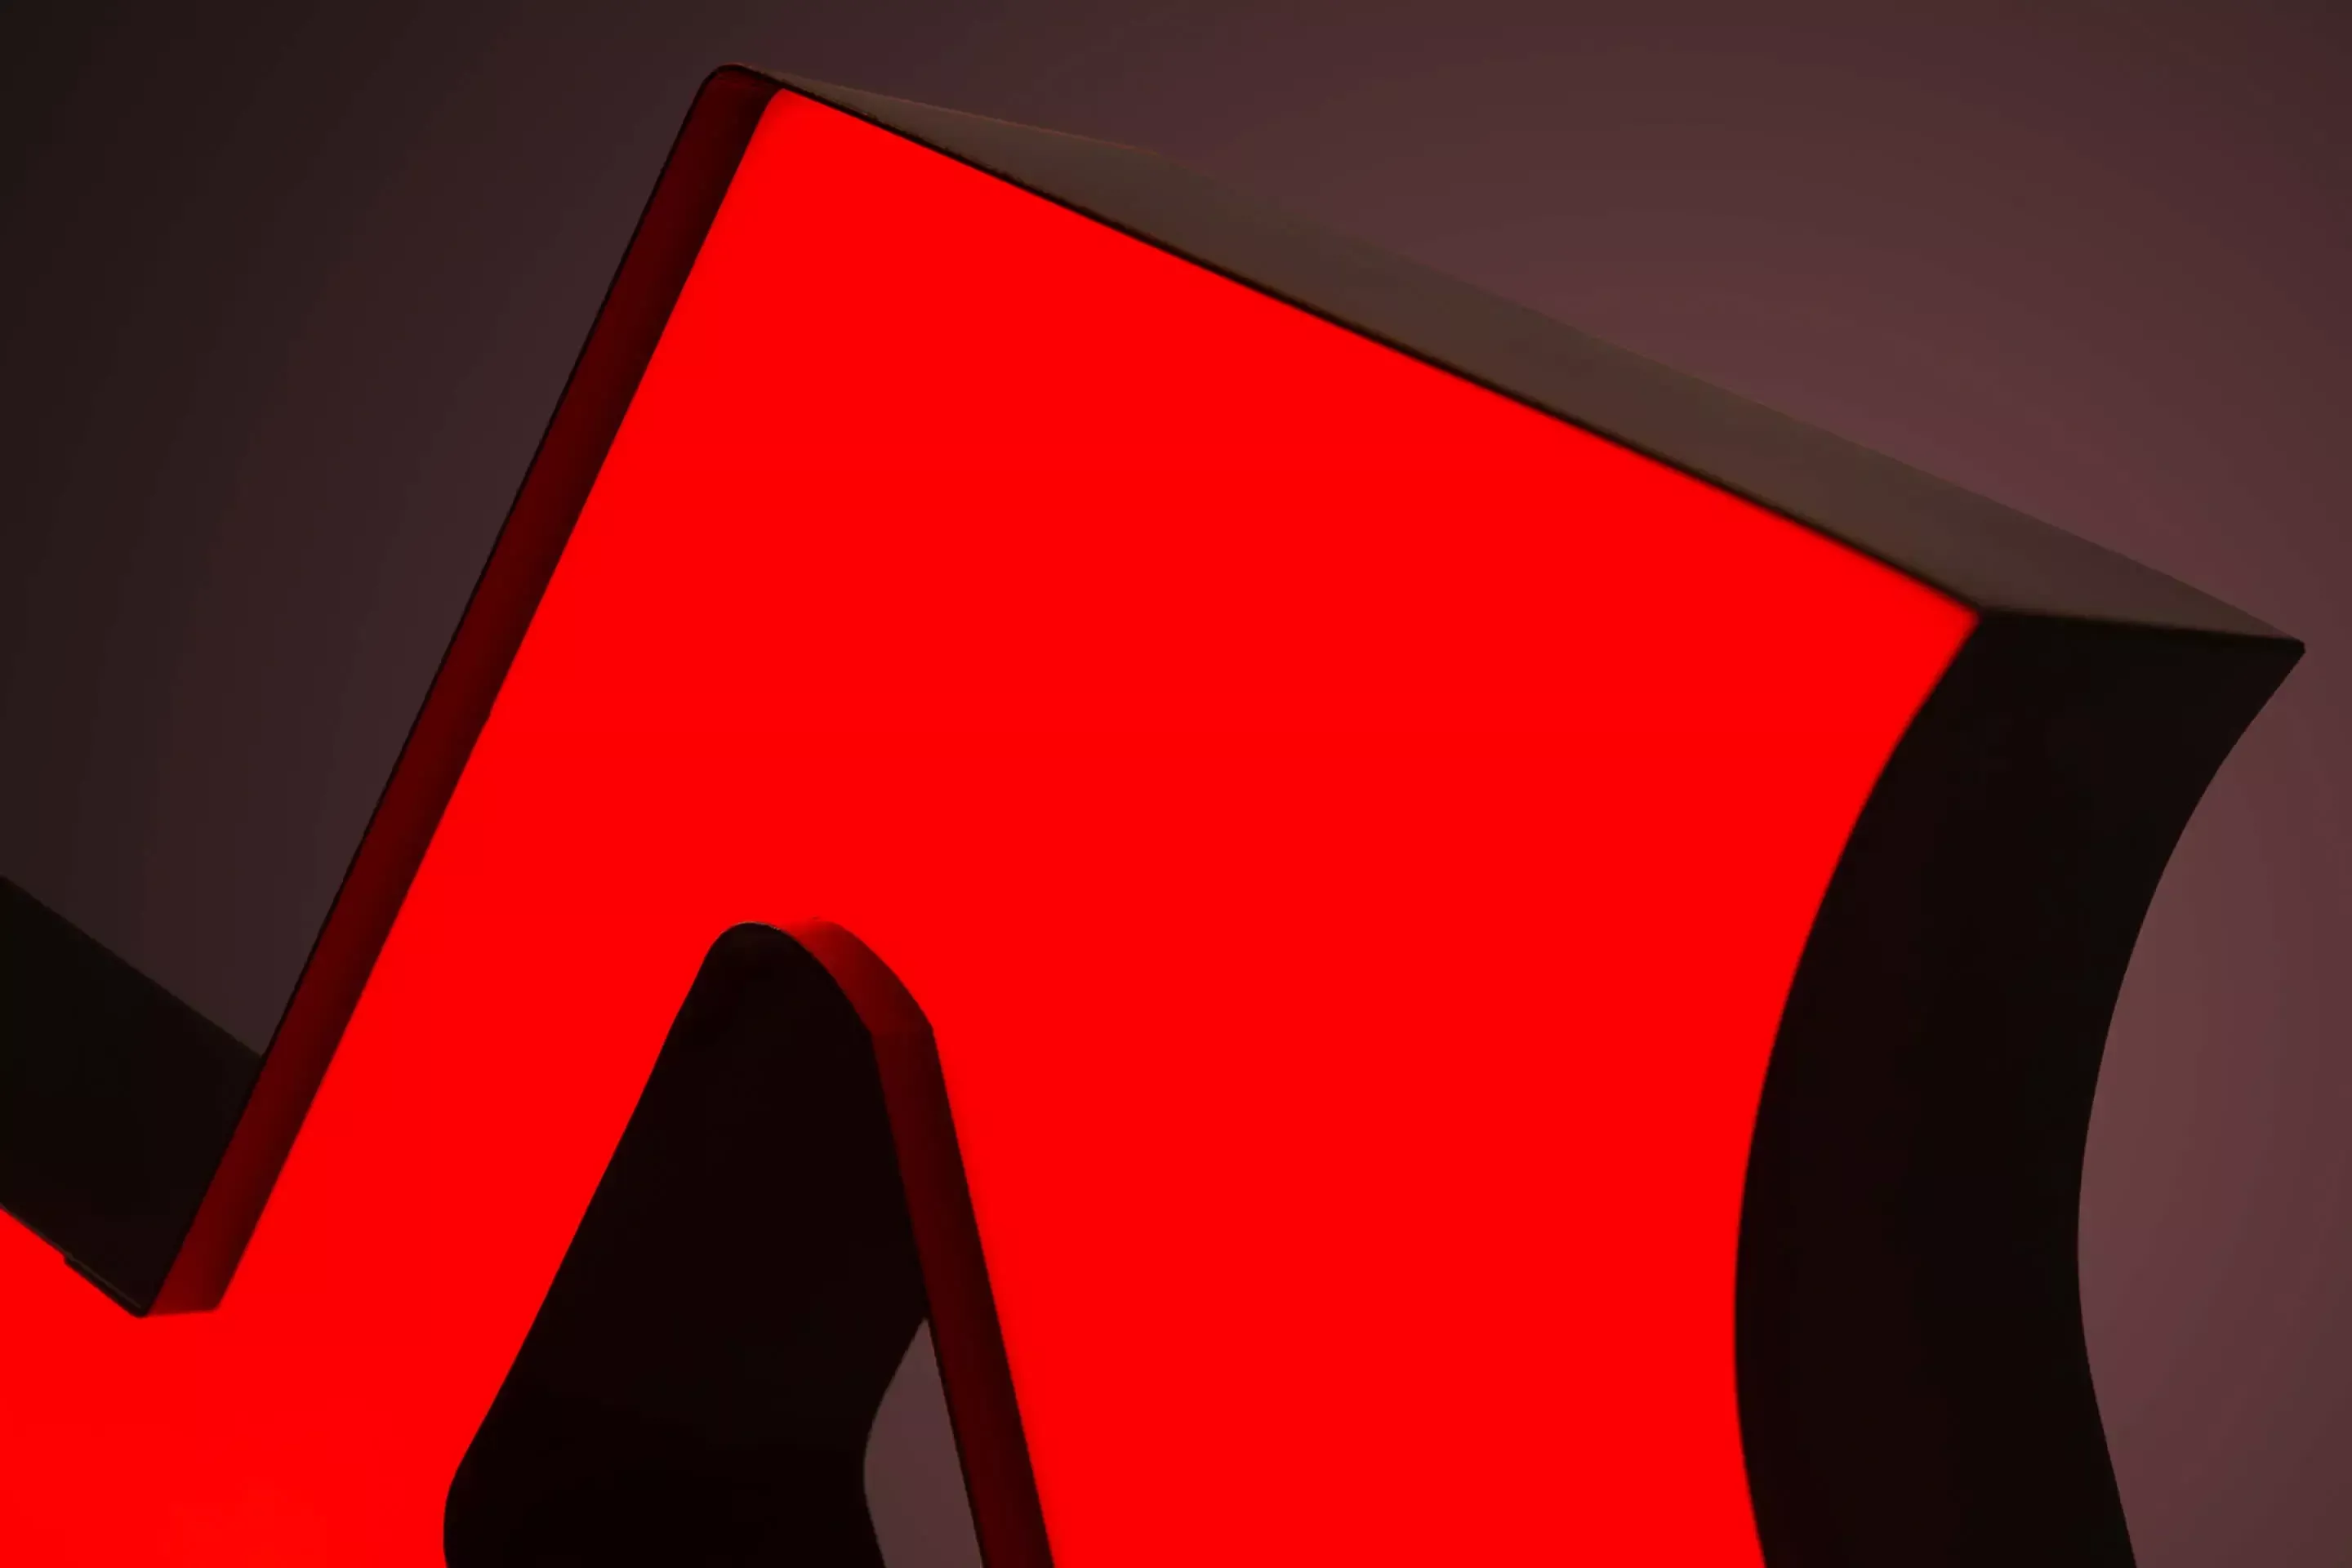 Lettre M - lettre personnalisée illuminée LED en rouge